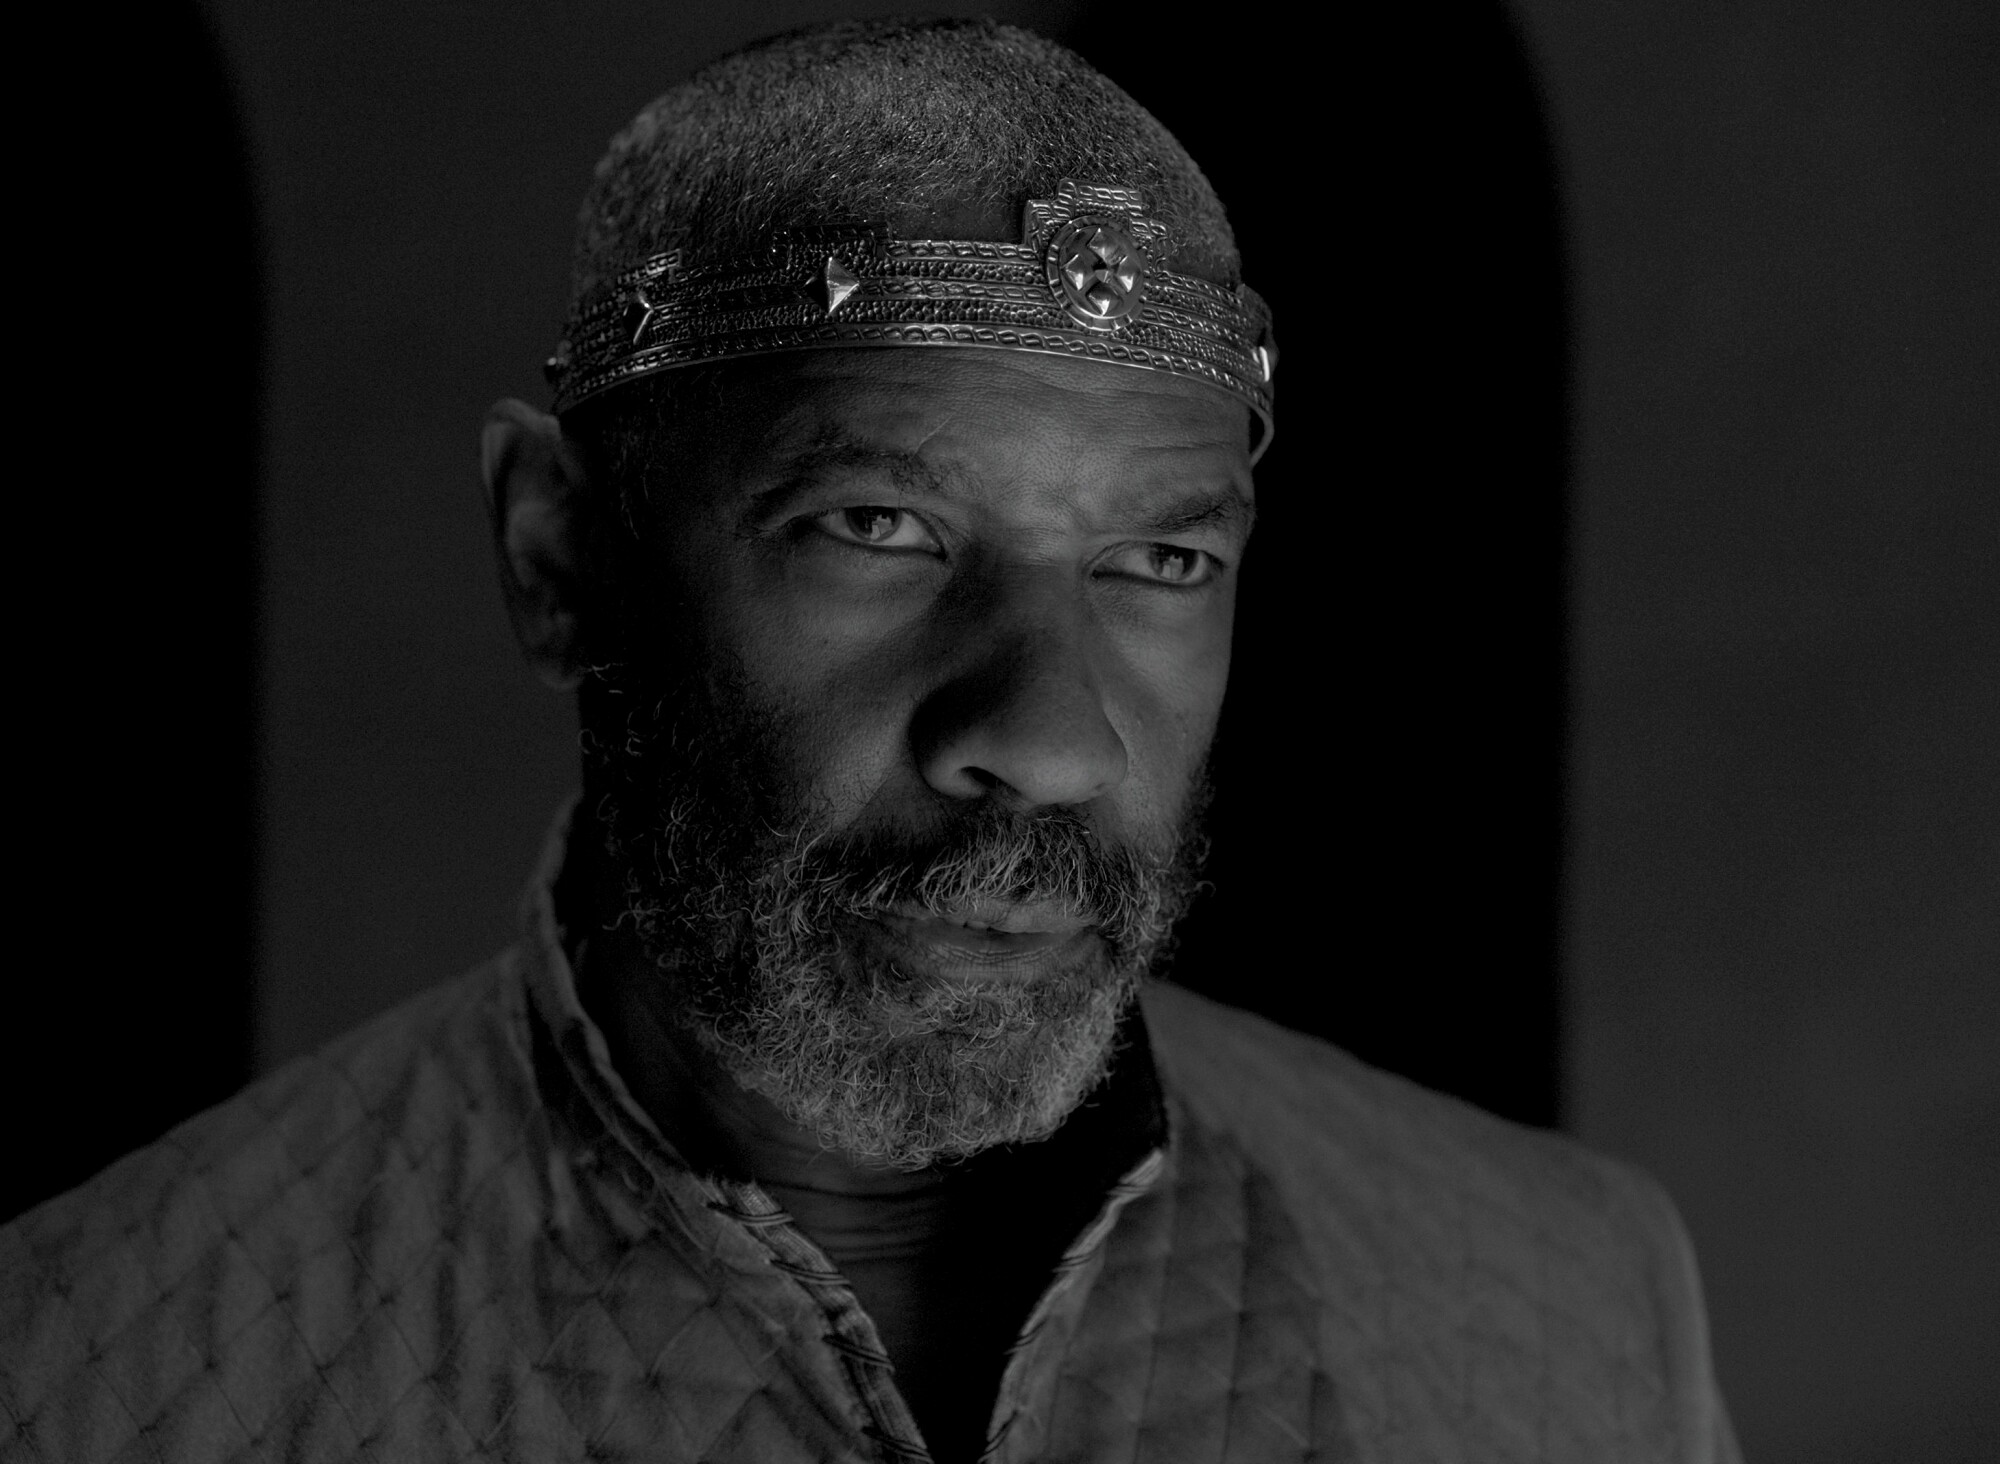 Denzel Washington as Macbeth in "The Tragedy of Macbeth."